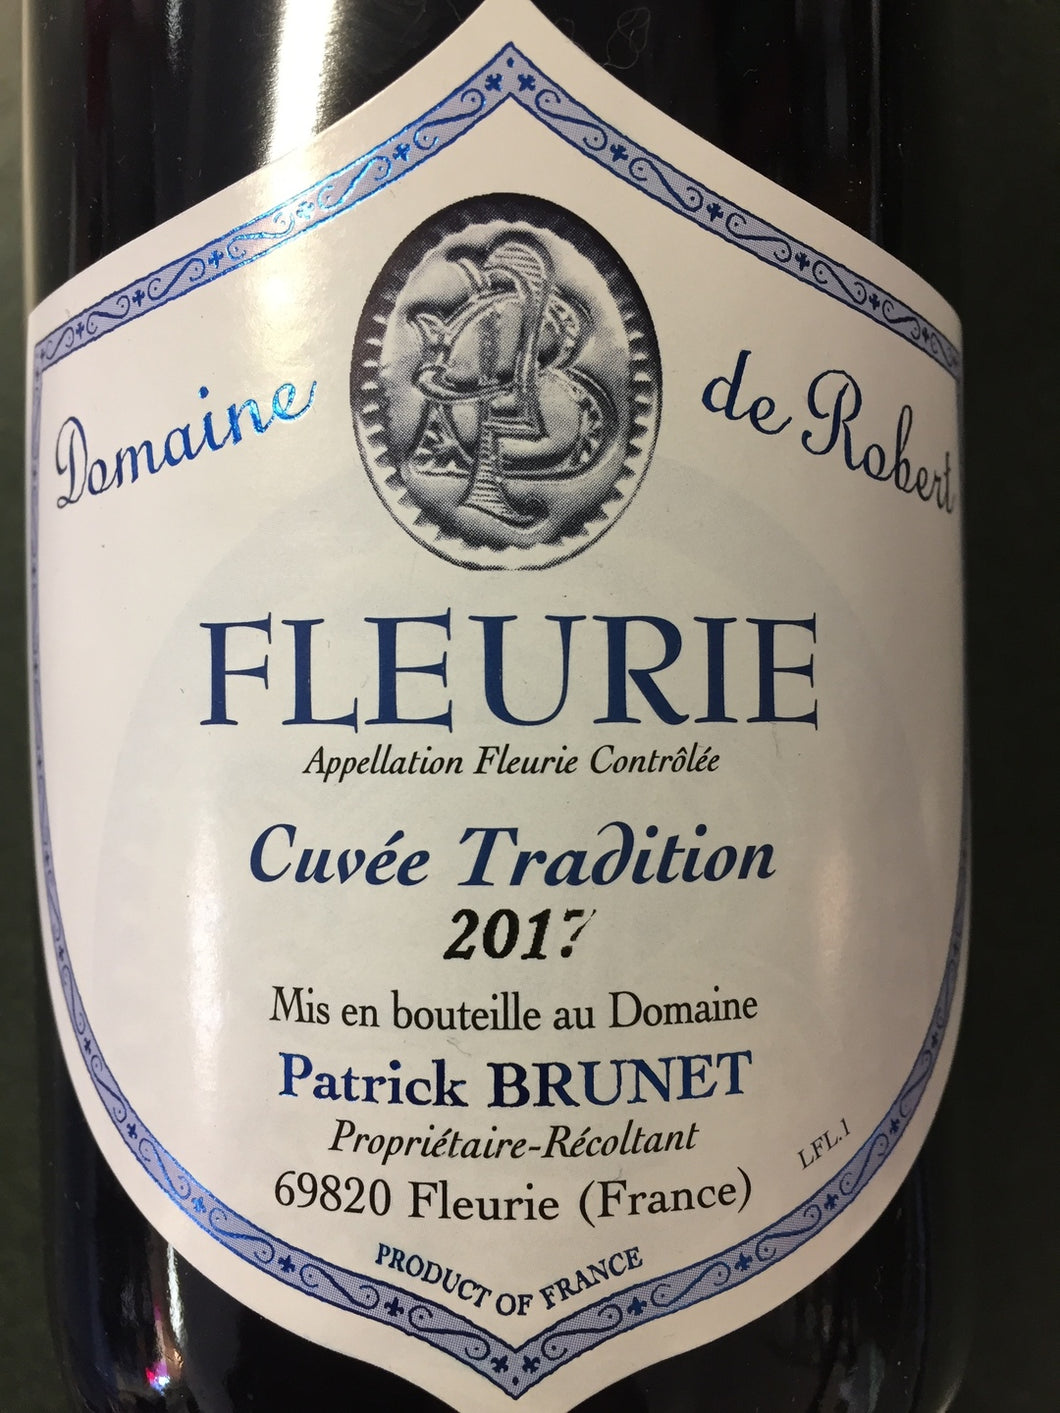 Fleurie “Cuvée Tradition”, Domaine de Robert 2022